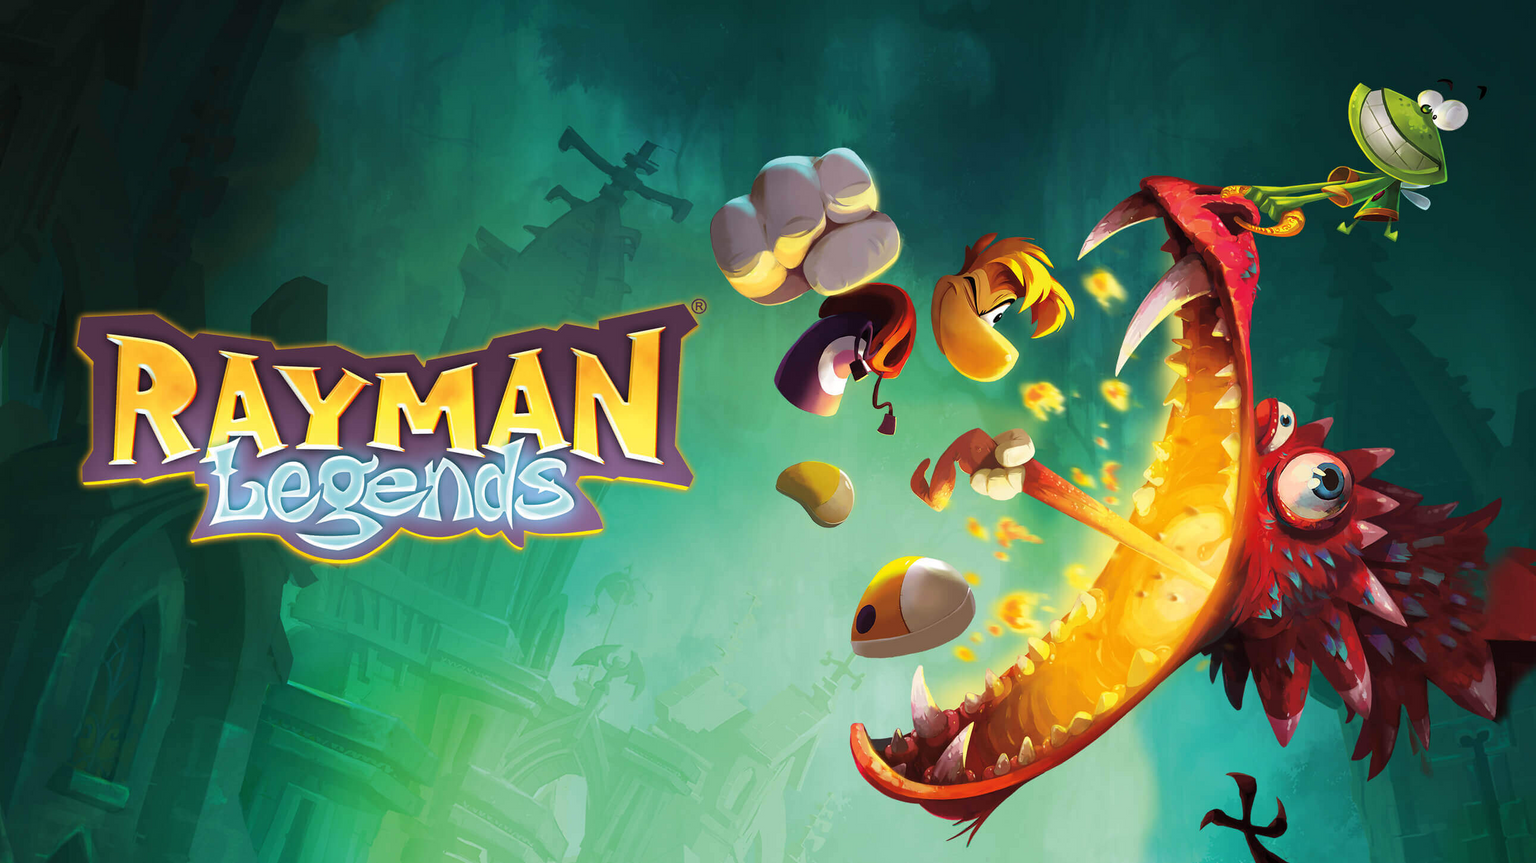 Vídeo compara os gráficos de Rayman Legends no Wii U e no PS3